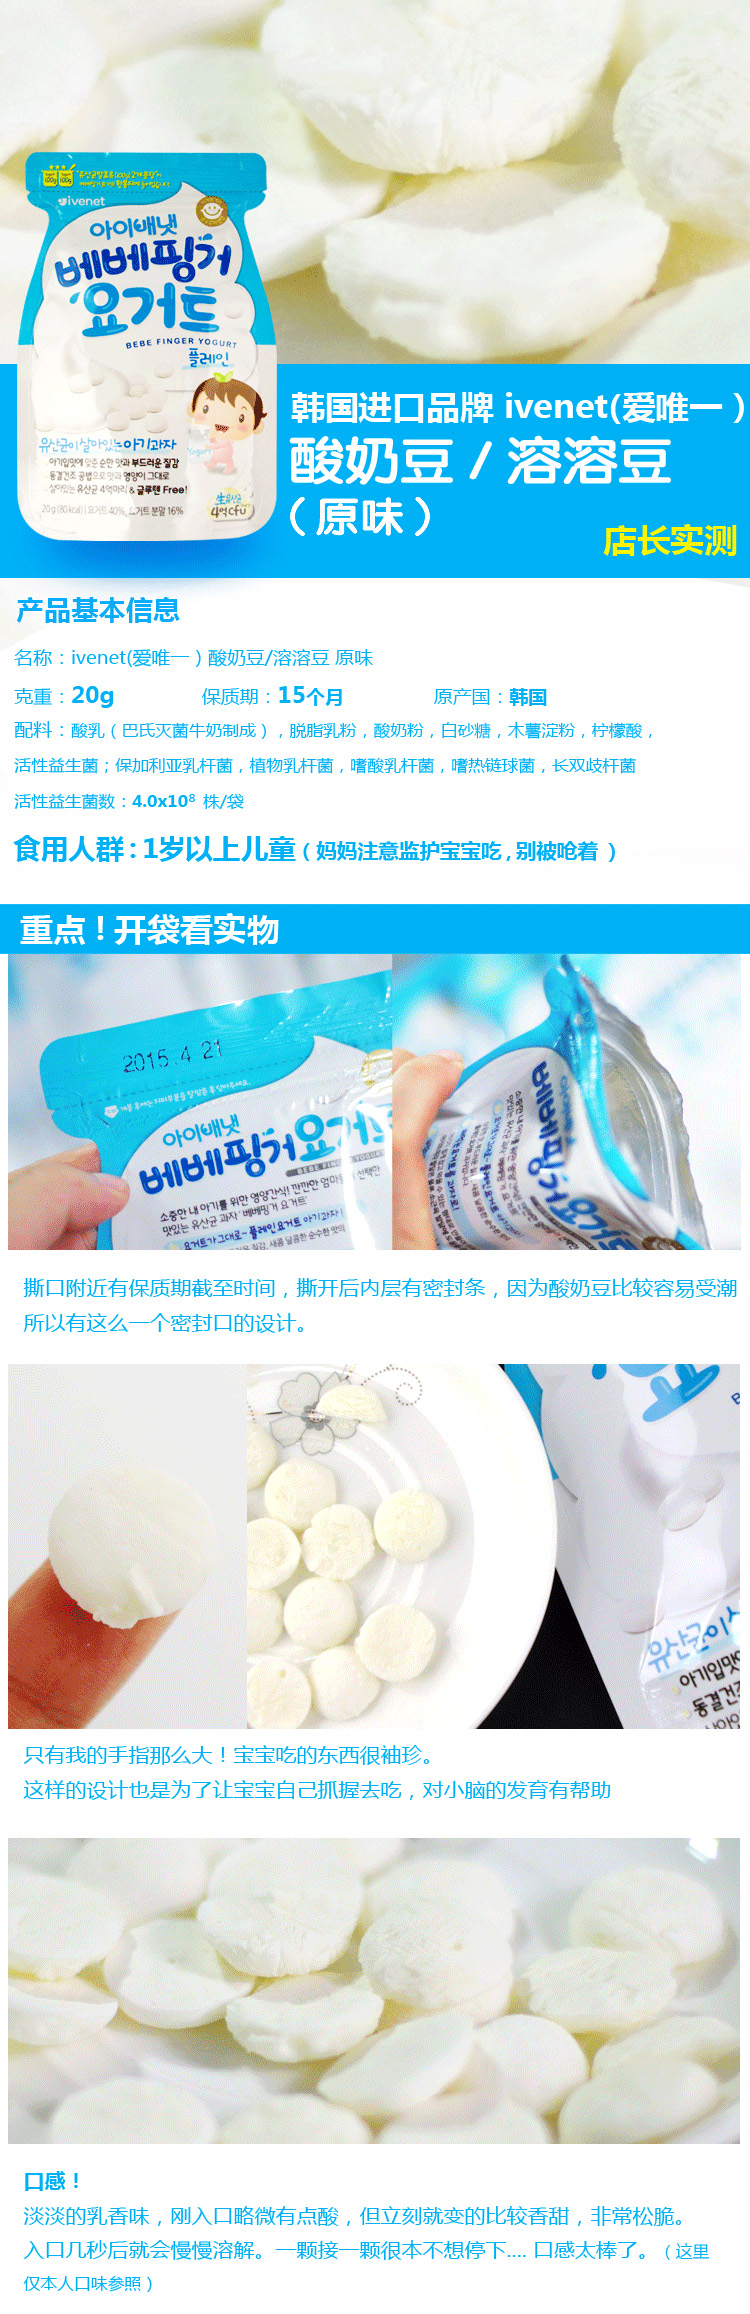 爱唯一ivenet韩国酸奶溶溶豆（香蕉）,产品编号39307